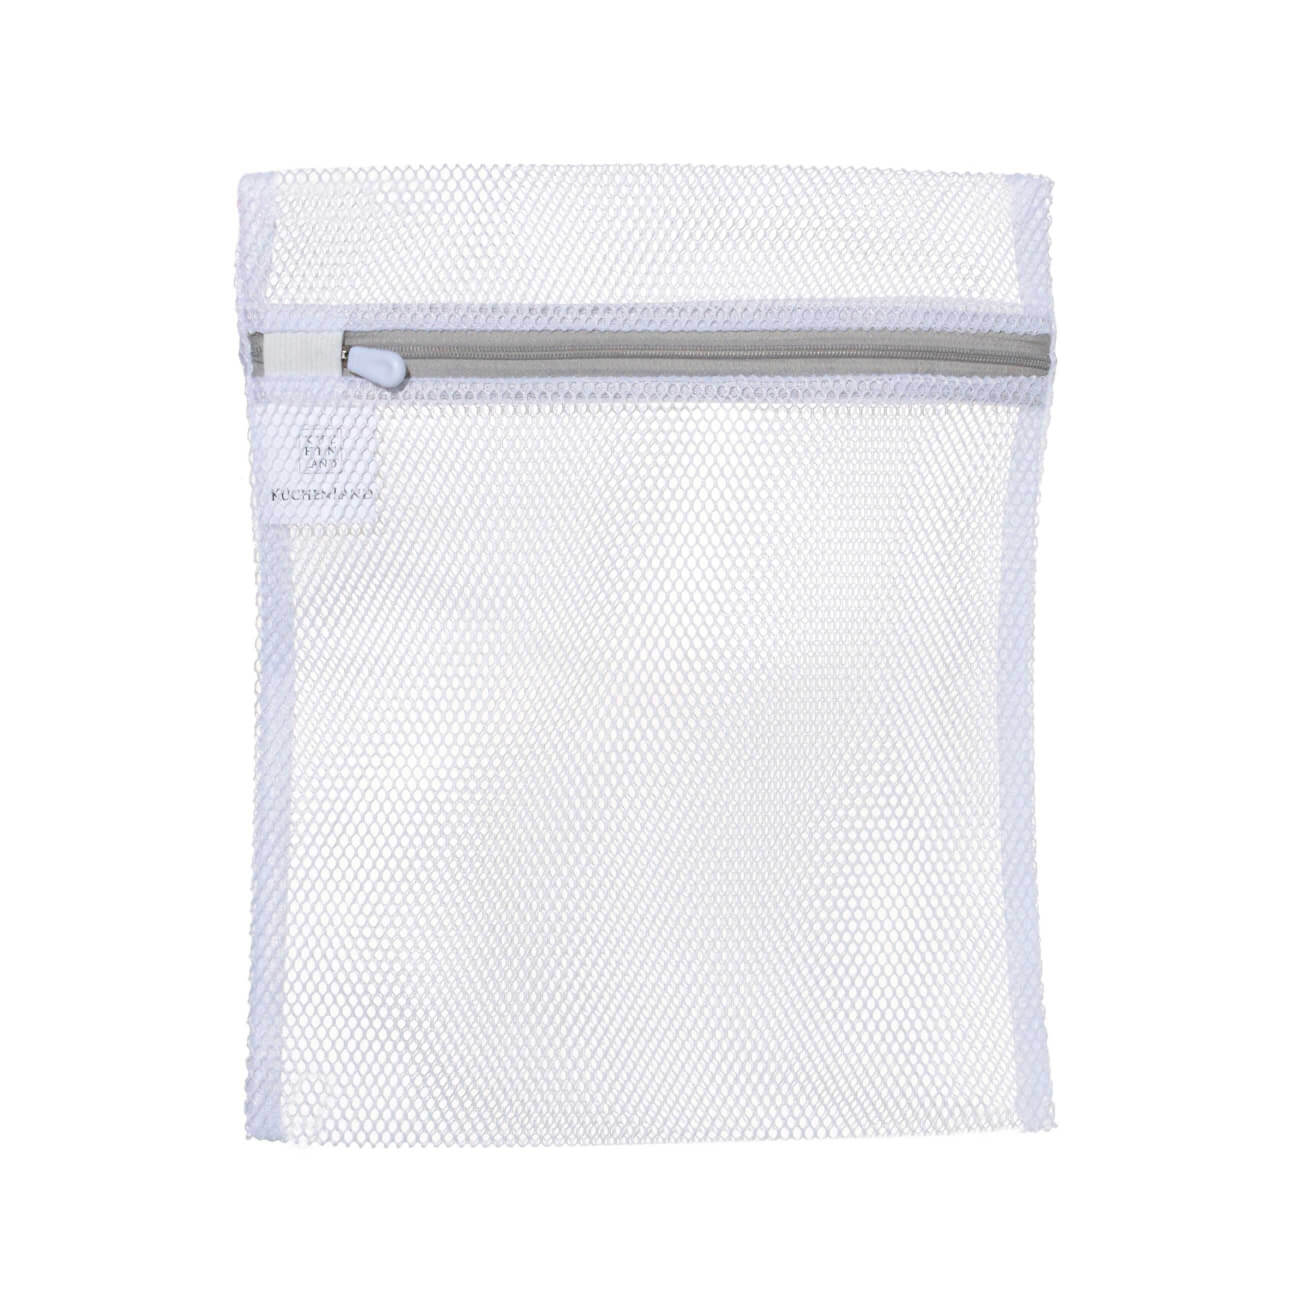 Мешок для стирки нижнего белья, 25х30 см, полиэстер, бело-серый, Safety мешок для стирки бюстгалтеров 15 см с защитой полиэстер safety